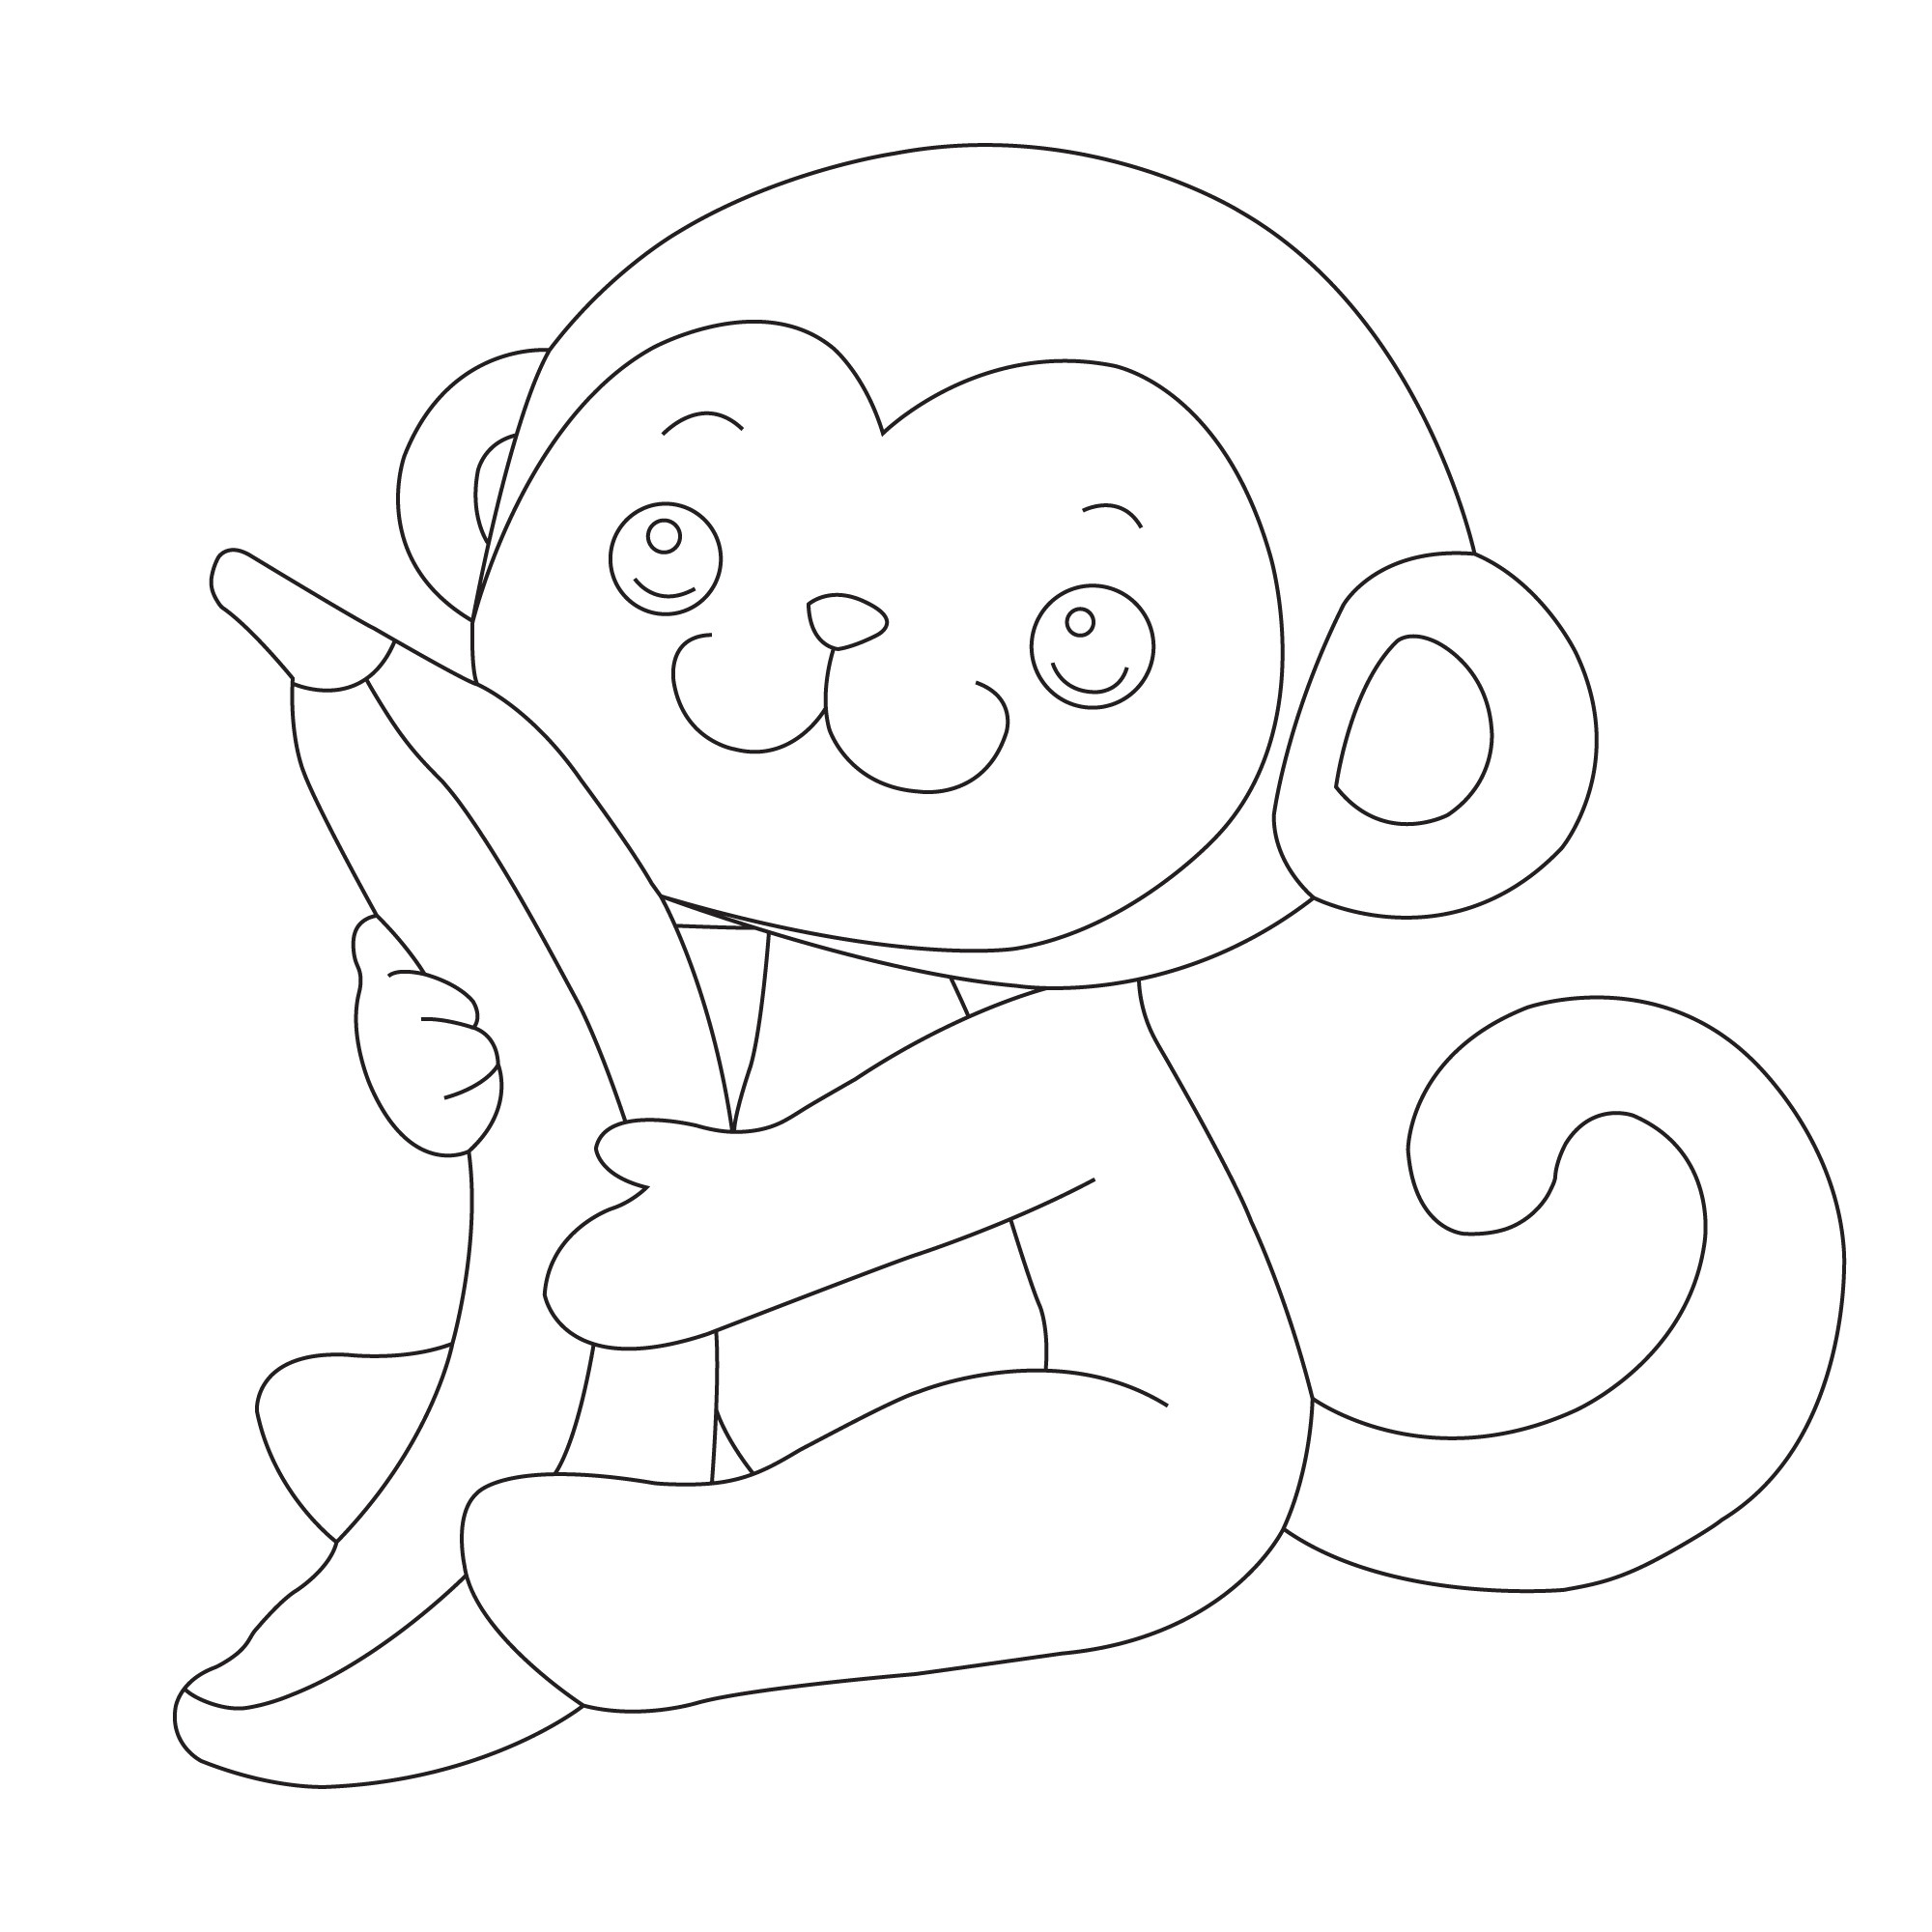 Раскраска для детей: детеныш обезьяны сидит в обнимку с бананом